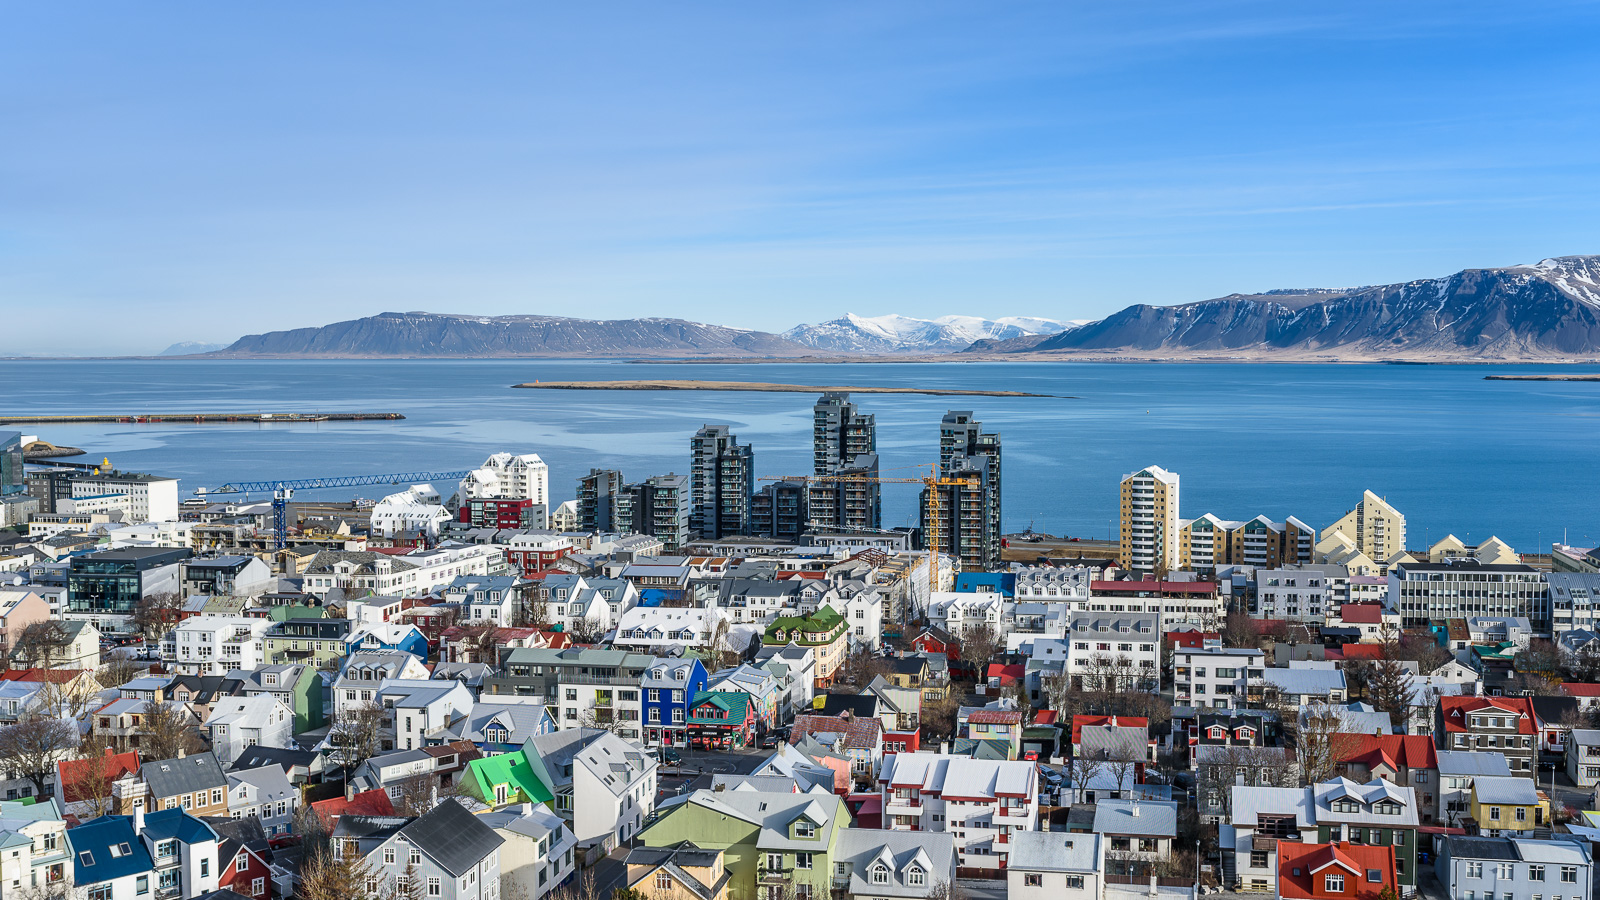 Reykjavik city overview